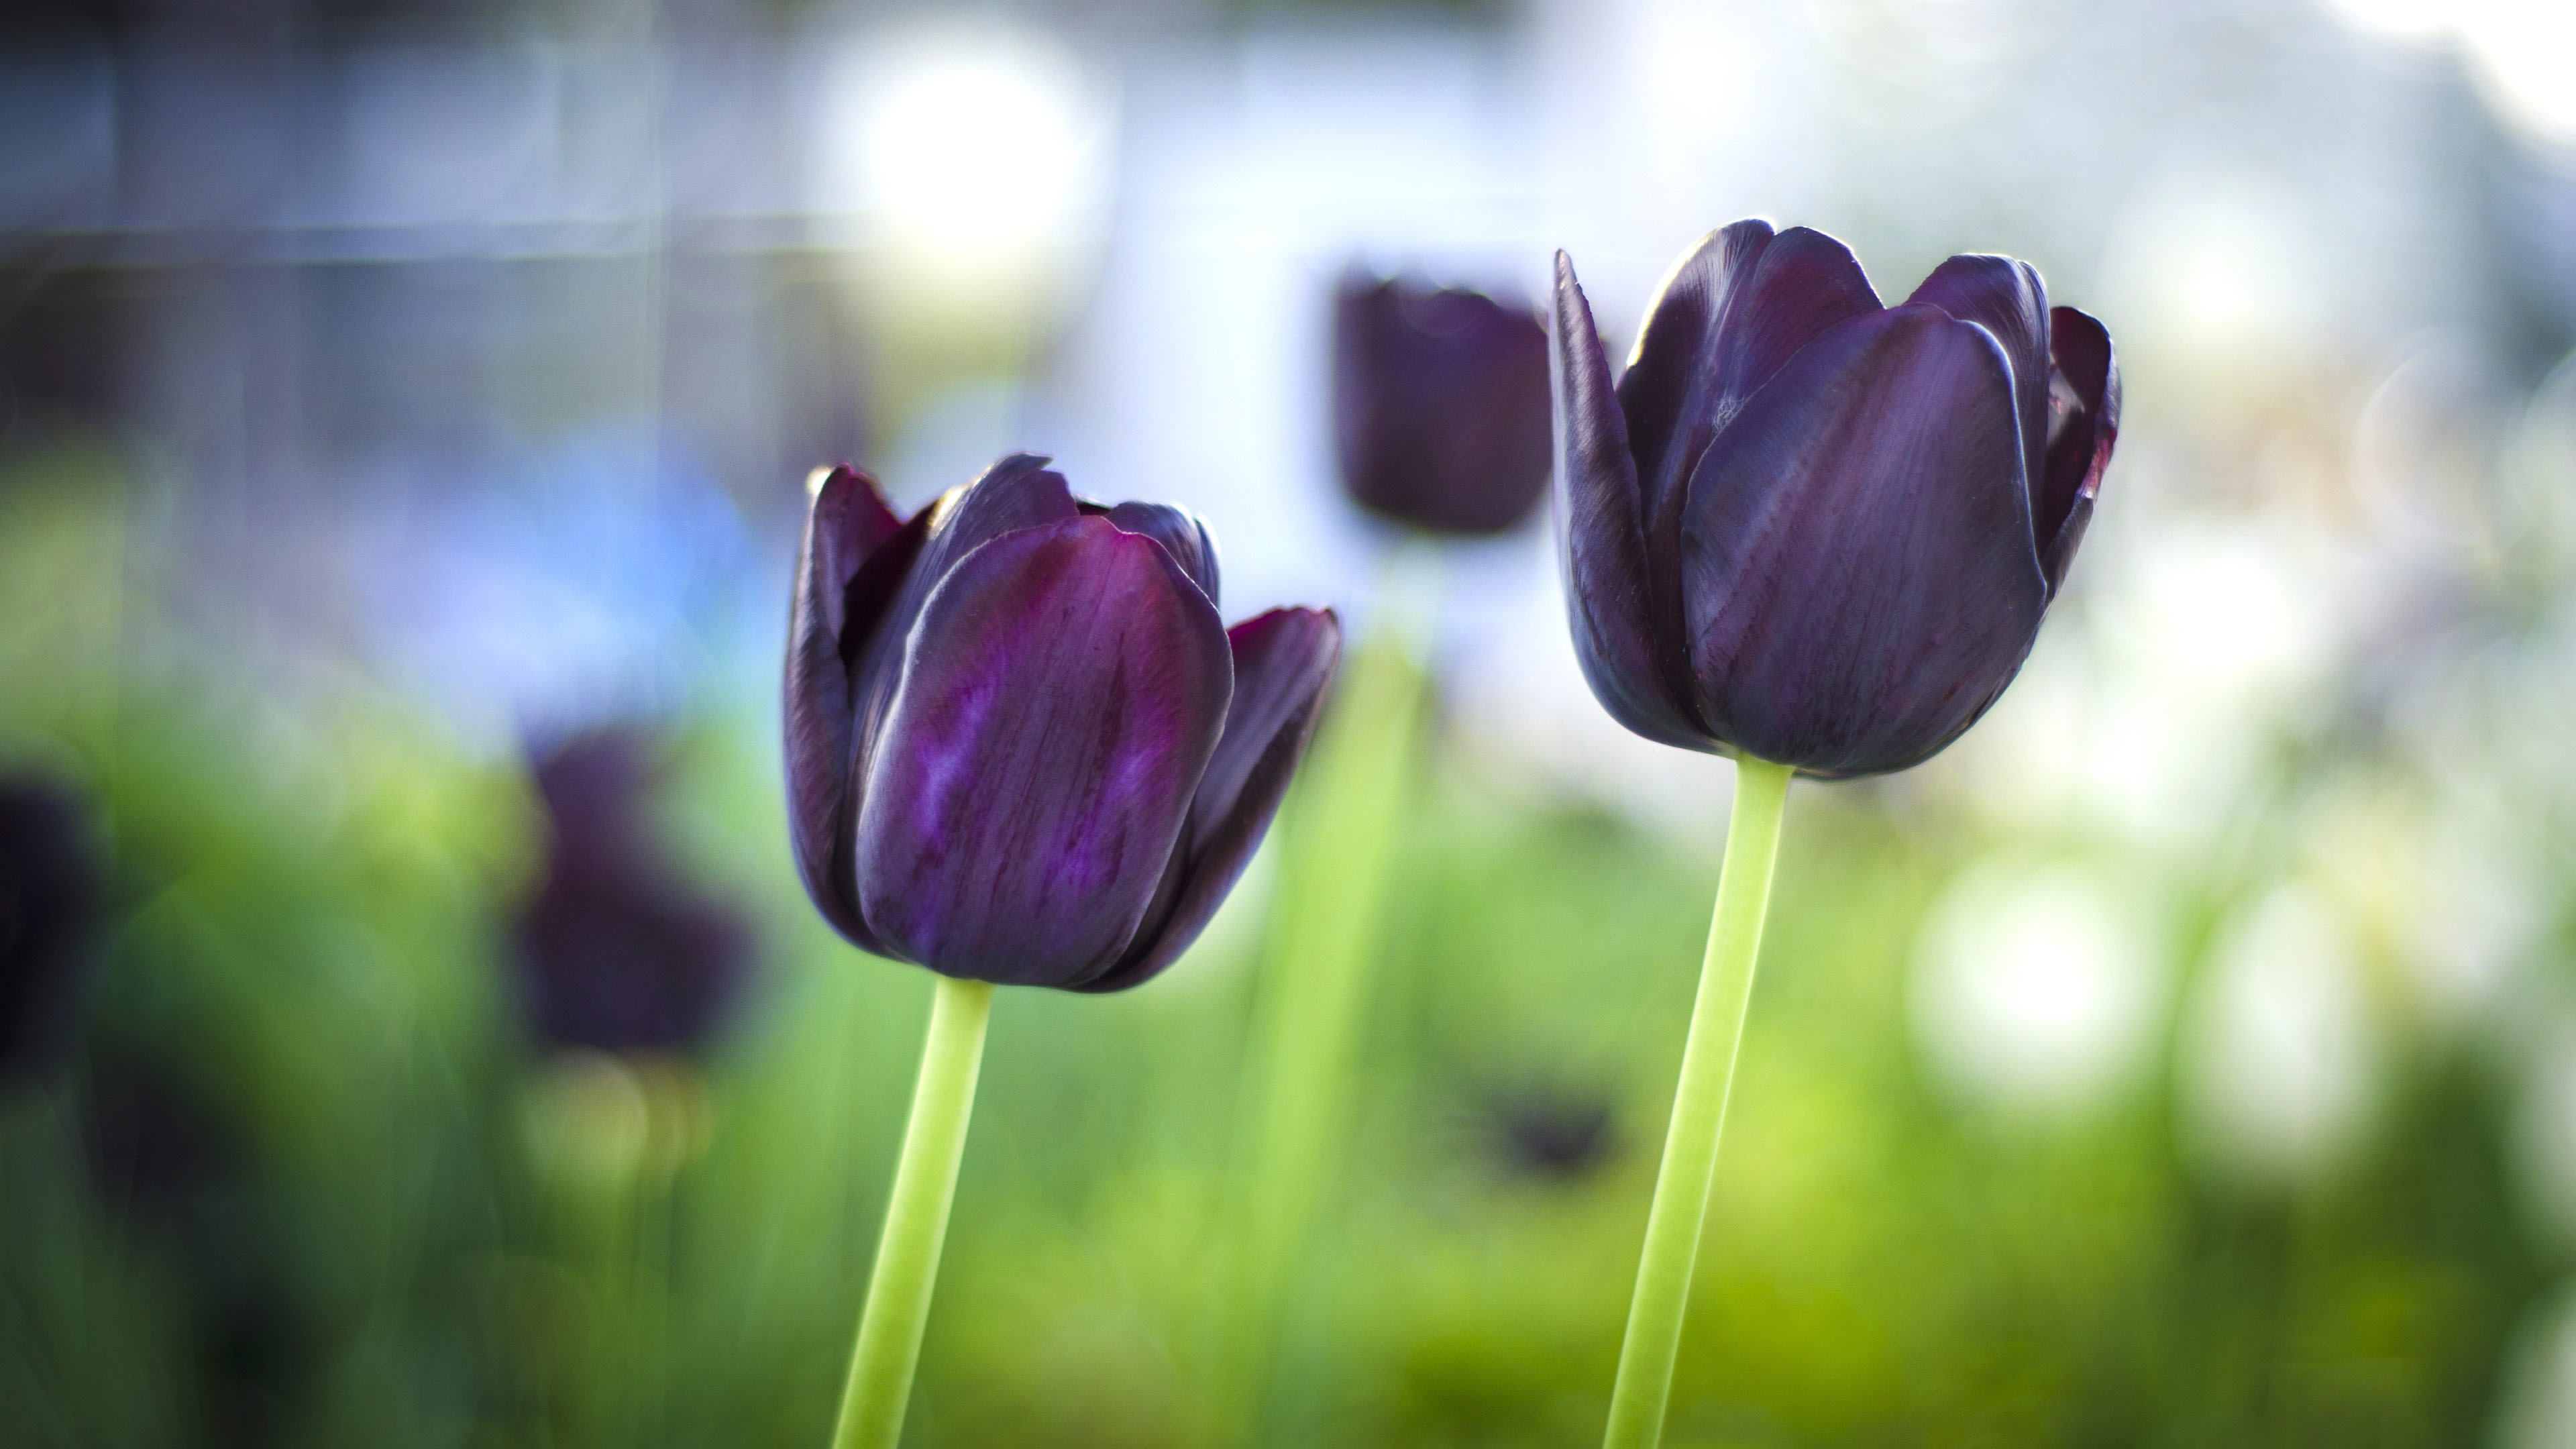 Tuyển tập hình ảnh hoa tulip đen đẹp nhất – Loài hoa chân thành, thủy chung - [Kích thước hình ảnh: 3840x2160 px]